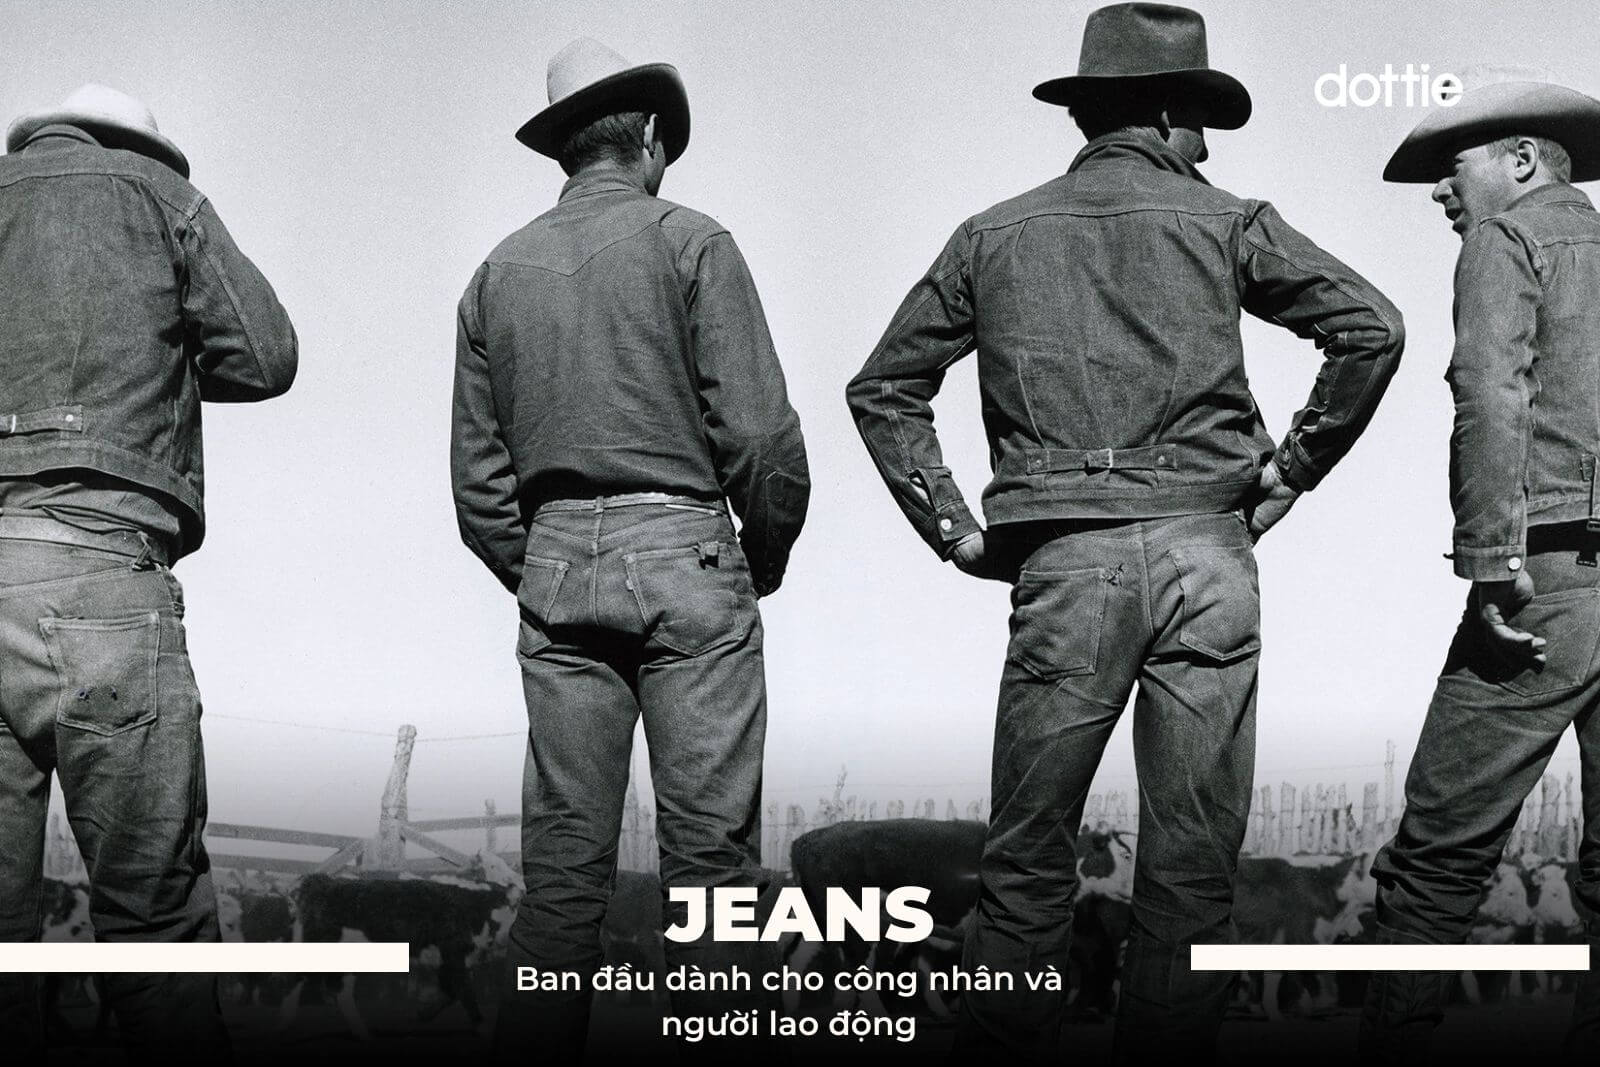 Jeans dành cho người lao động